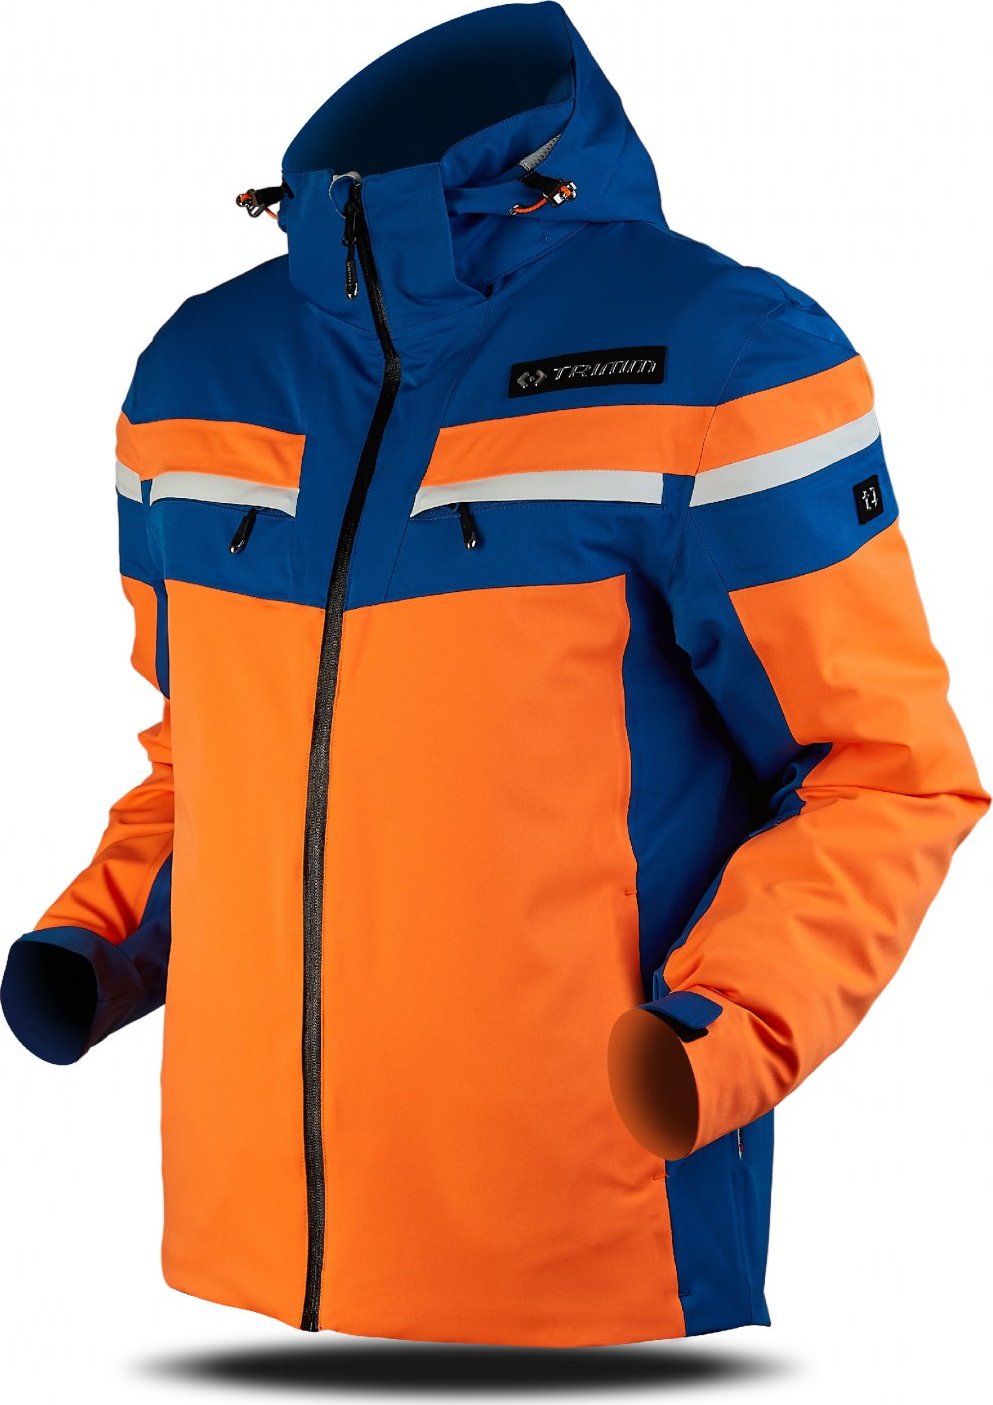 Pánská lyžařská bunda TRIMM Fusion oranžová Velikost: M, Barva: signal orange/navy/white